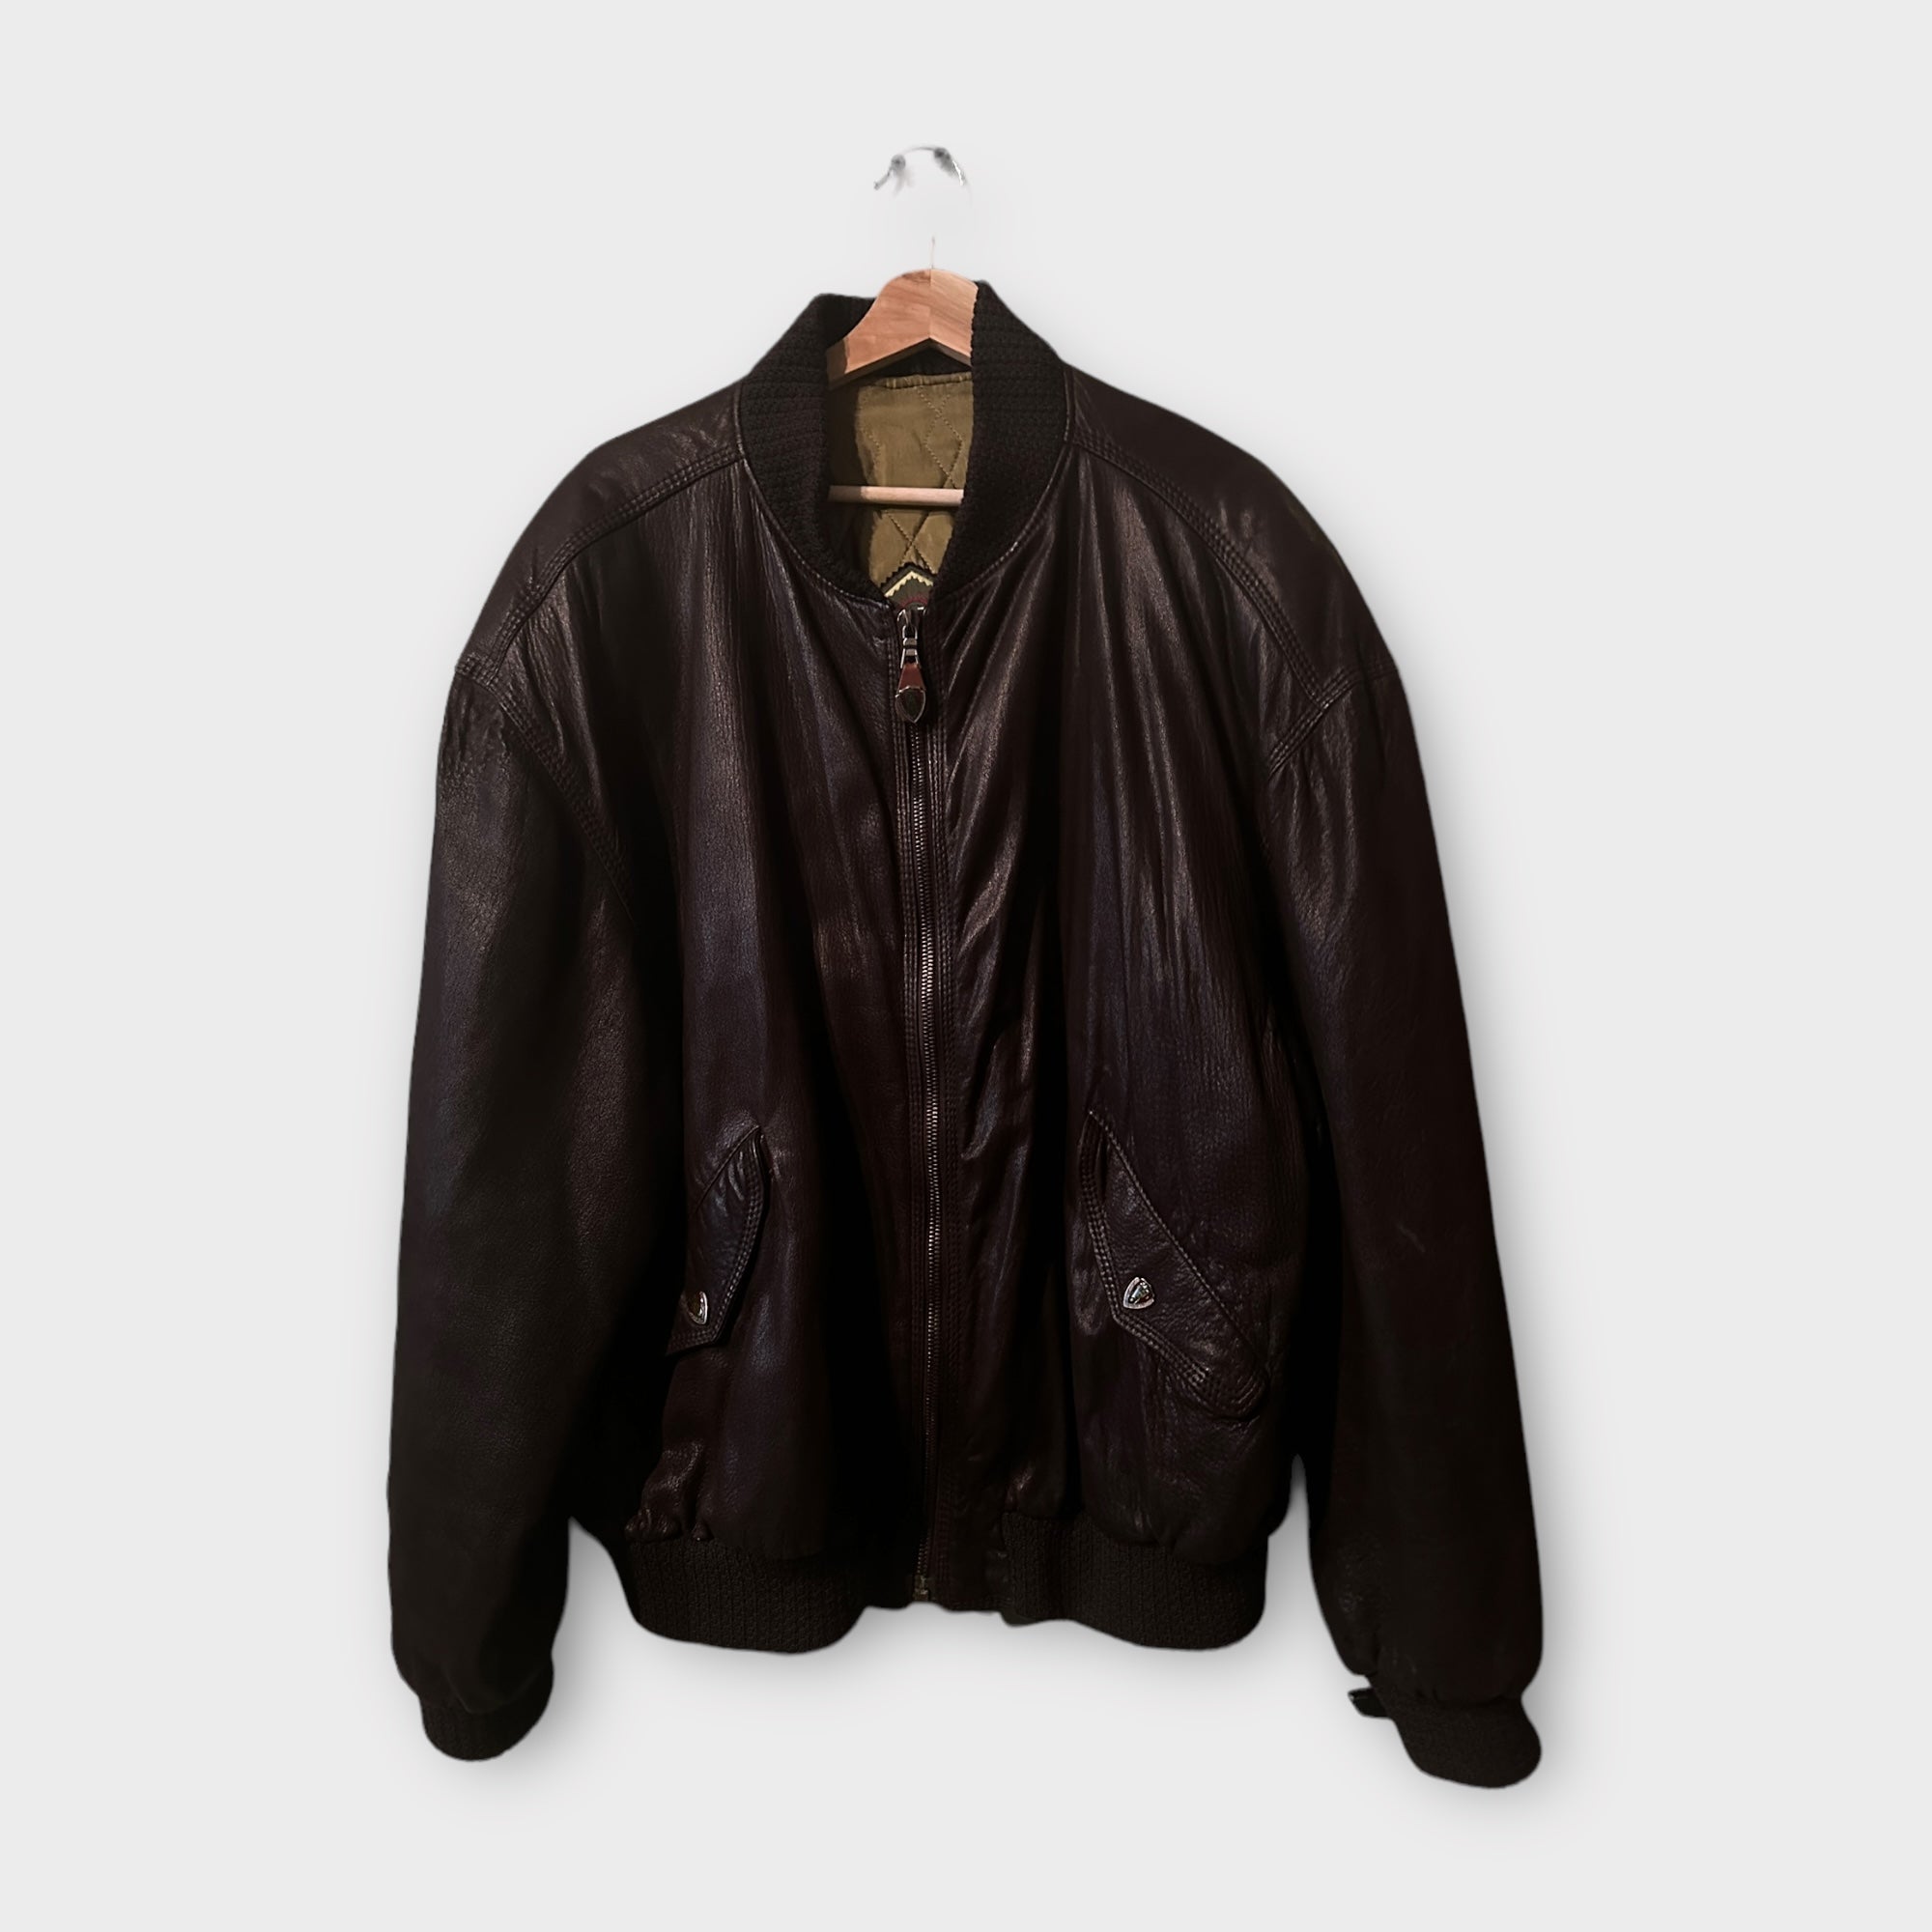 Hugo Boss Vintage Leather Jacket